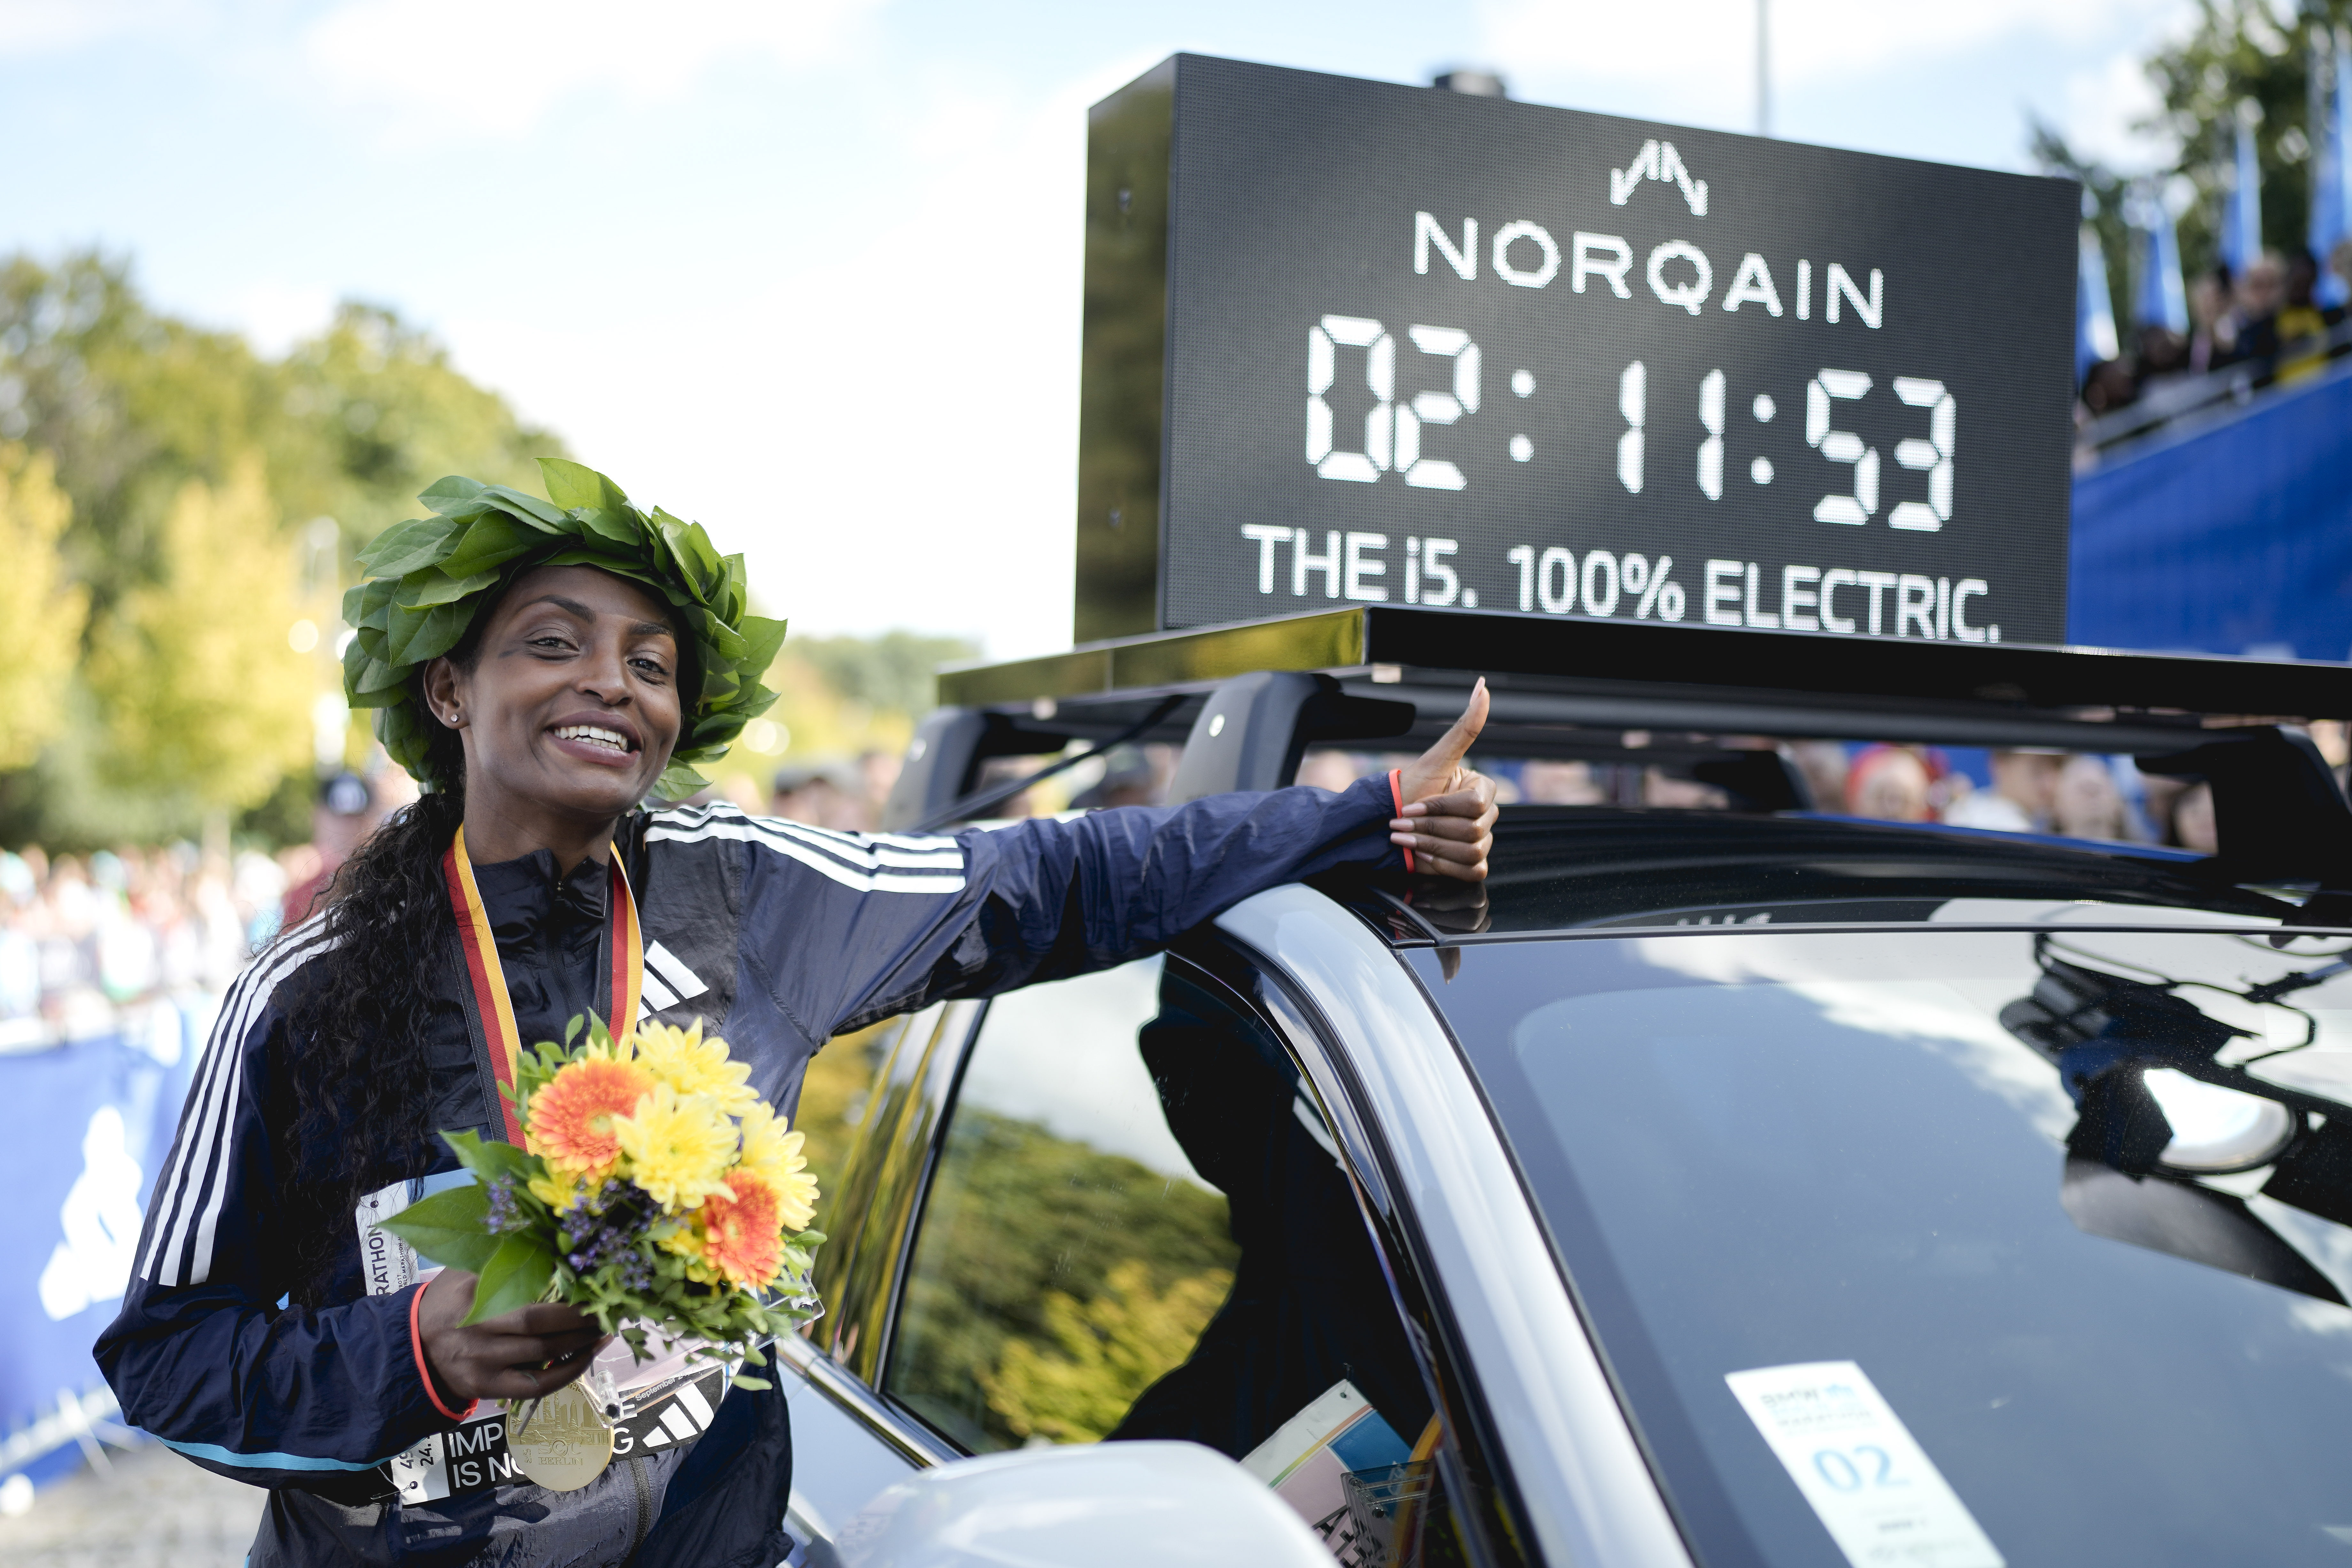 Etiopianca Tigist Assefa doboară recordul mondial de maraton feminin la Berlin